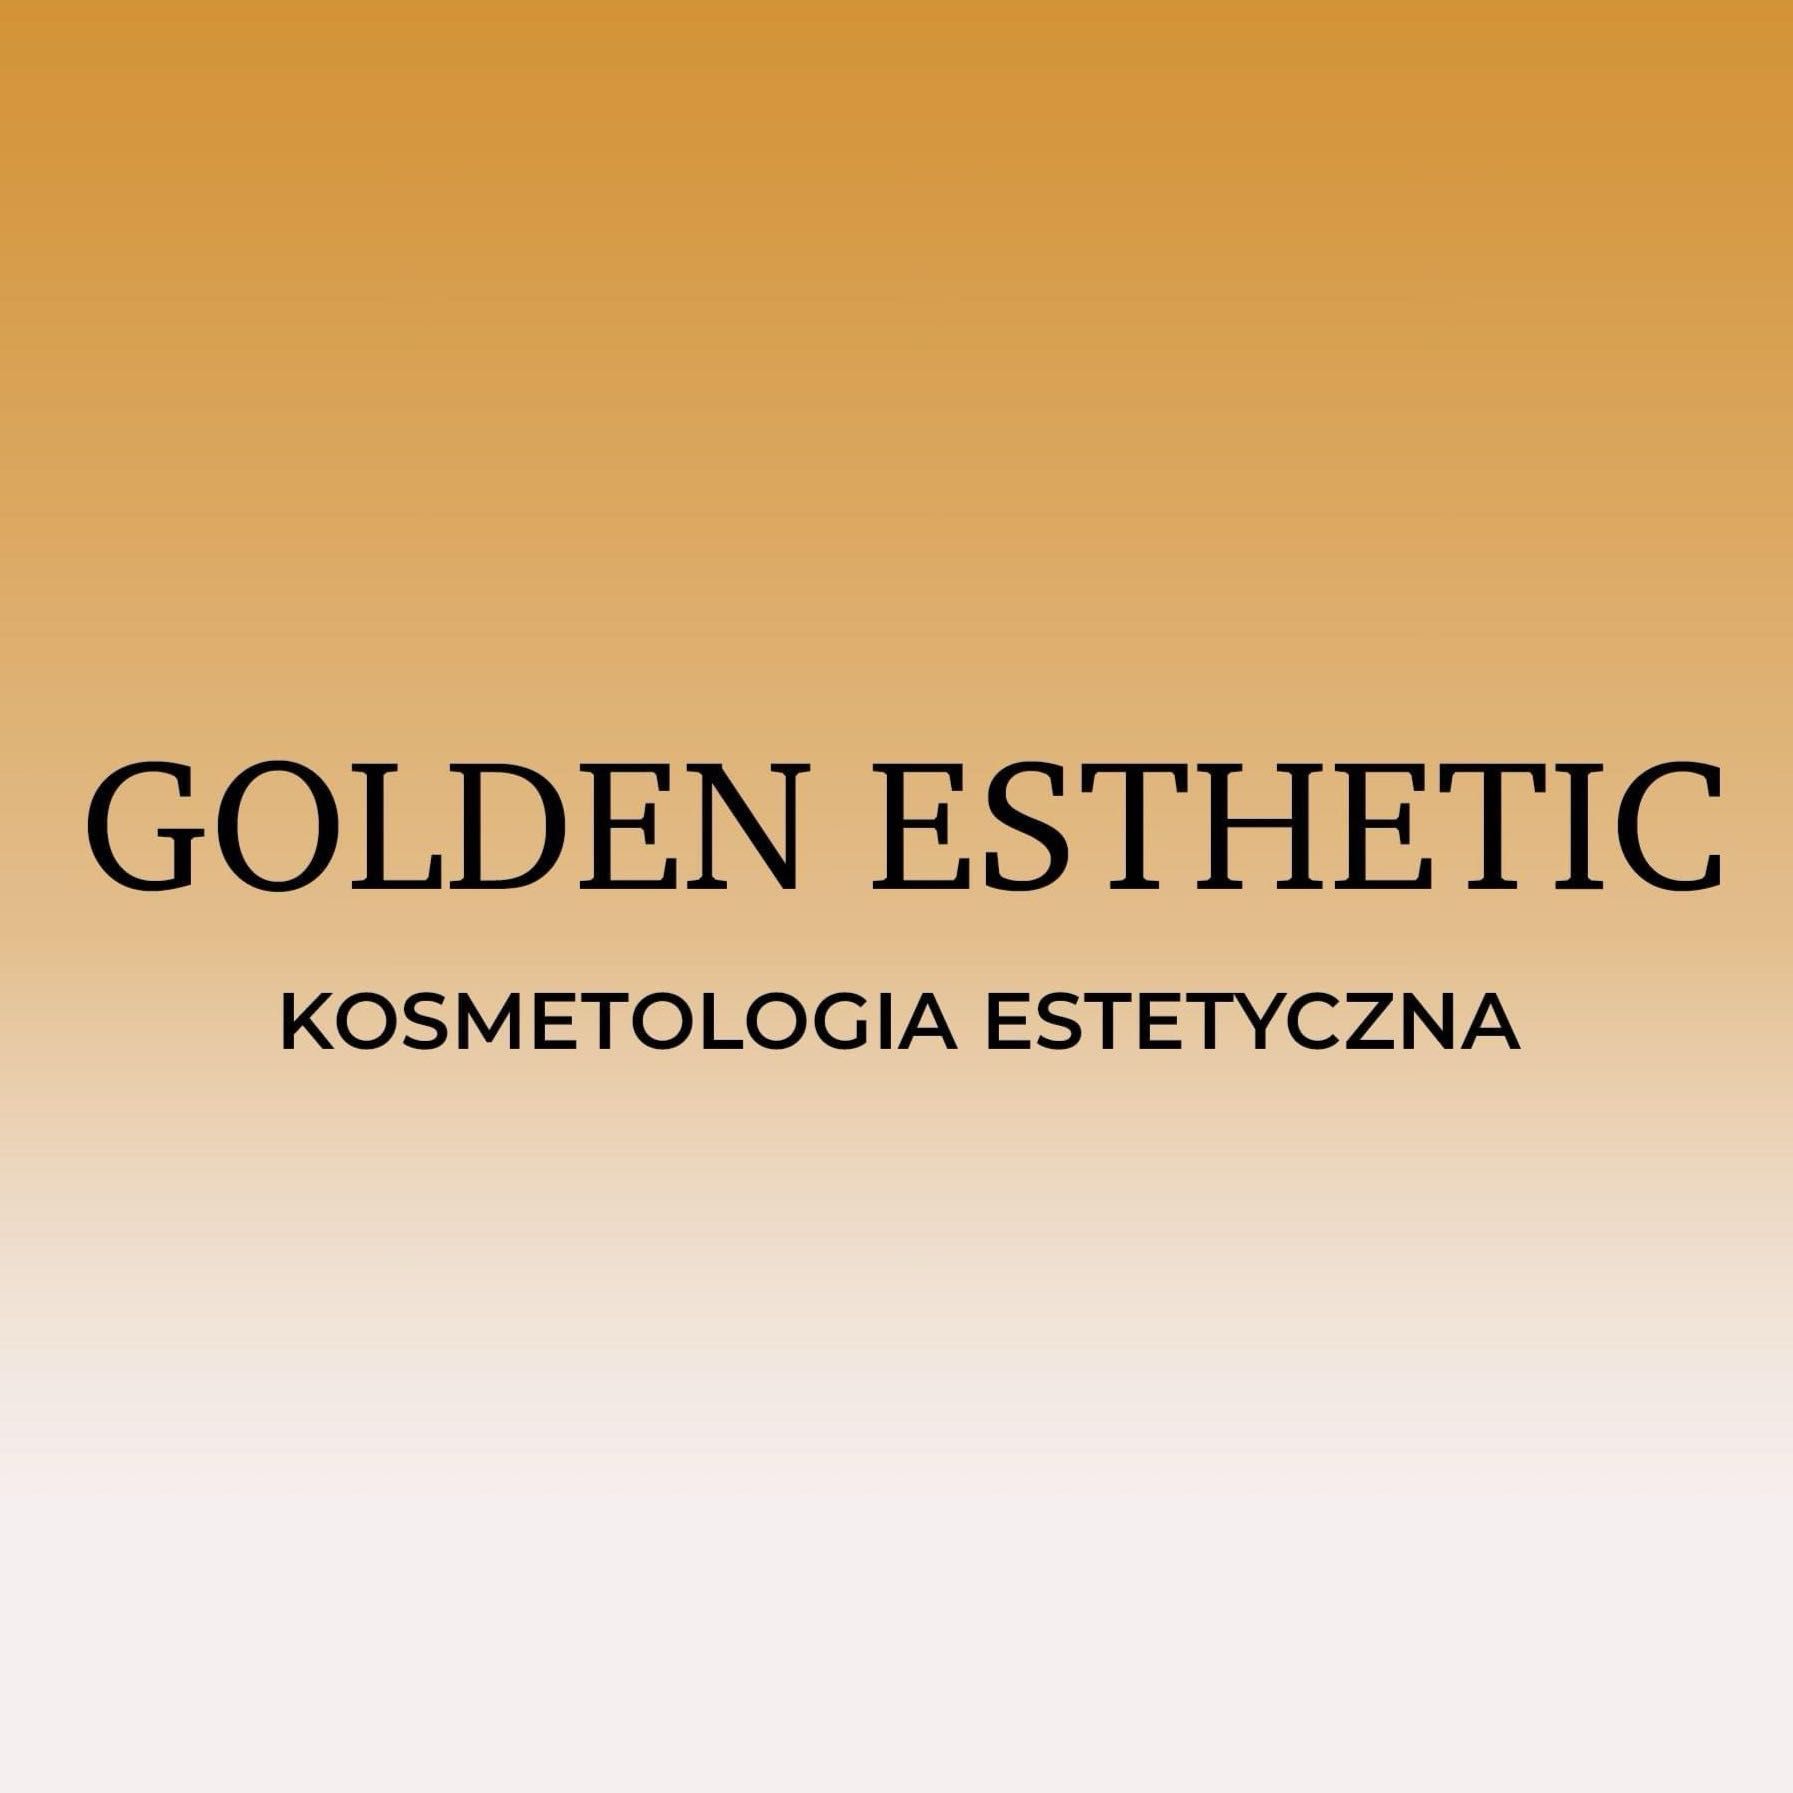 Golden Esthetic Kosmetologia Estetyczna, Stacyjna 1, 1 -22 Centrum Estetyki dr Kulczycka, 53-613, Wrocław